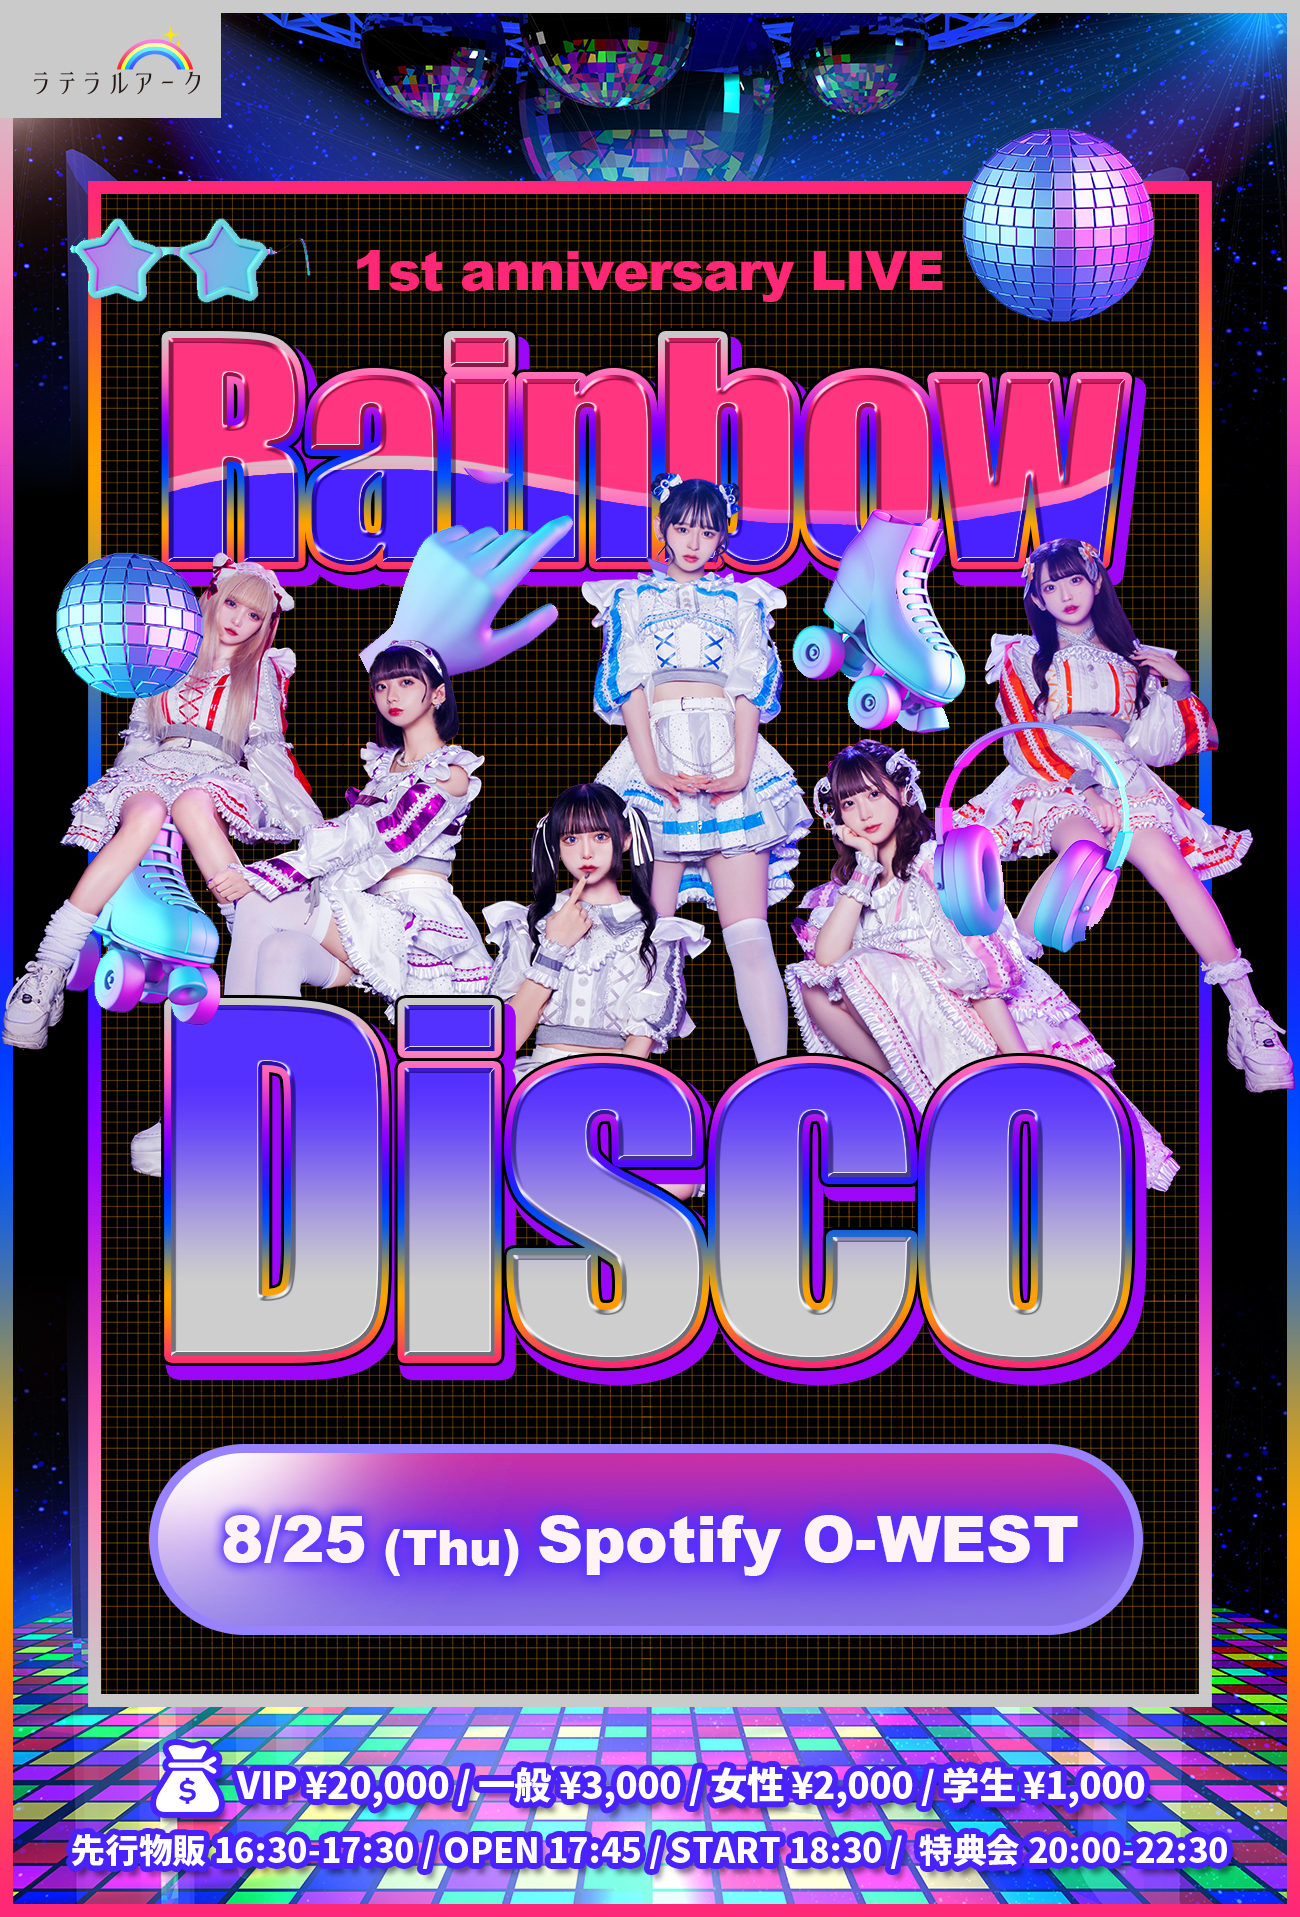 ラテラルアーク 1st anniversary LIVE『Rainbow Disco』